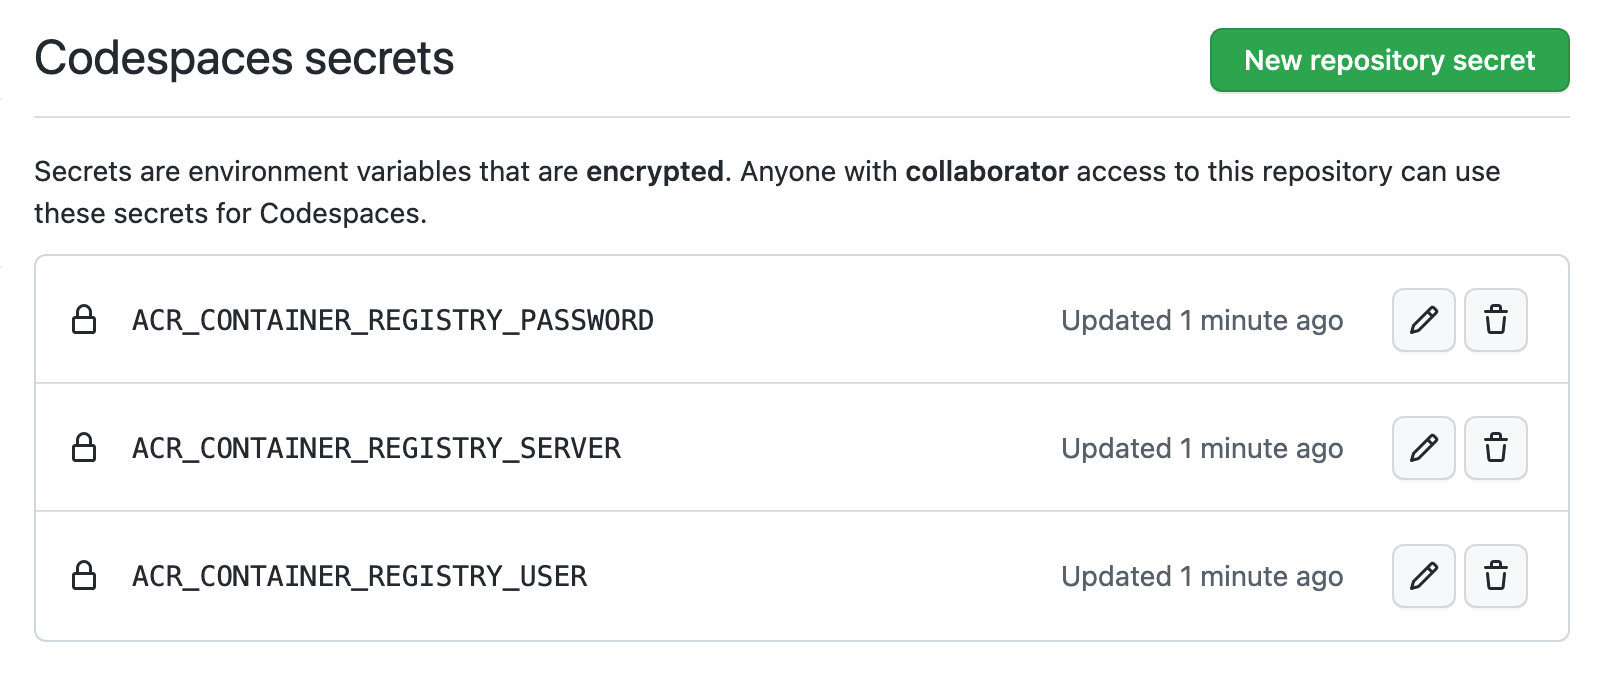 Captura de pantalla de la configuración "Secretos de Codespaces" para un repositorio. Se establecen tres secretos para ACR Container Registry.